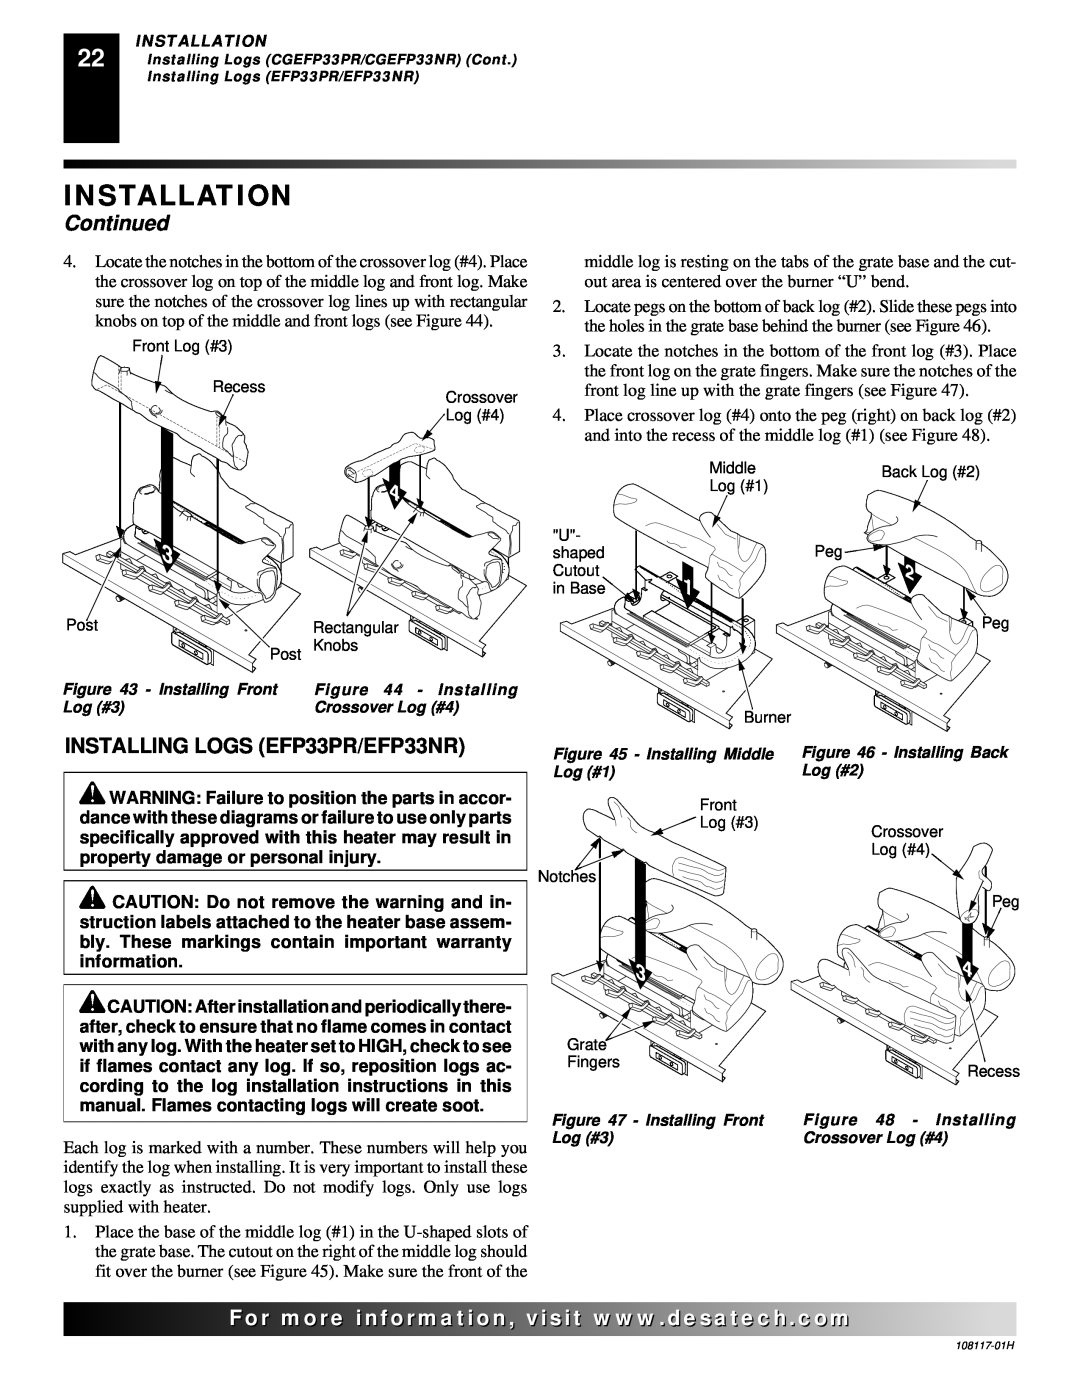 Desa installation manual INSTALLING LOGS EFP33PR/EFP33NR, Installation, Continued 